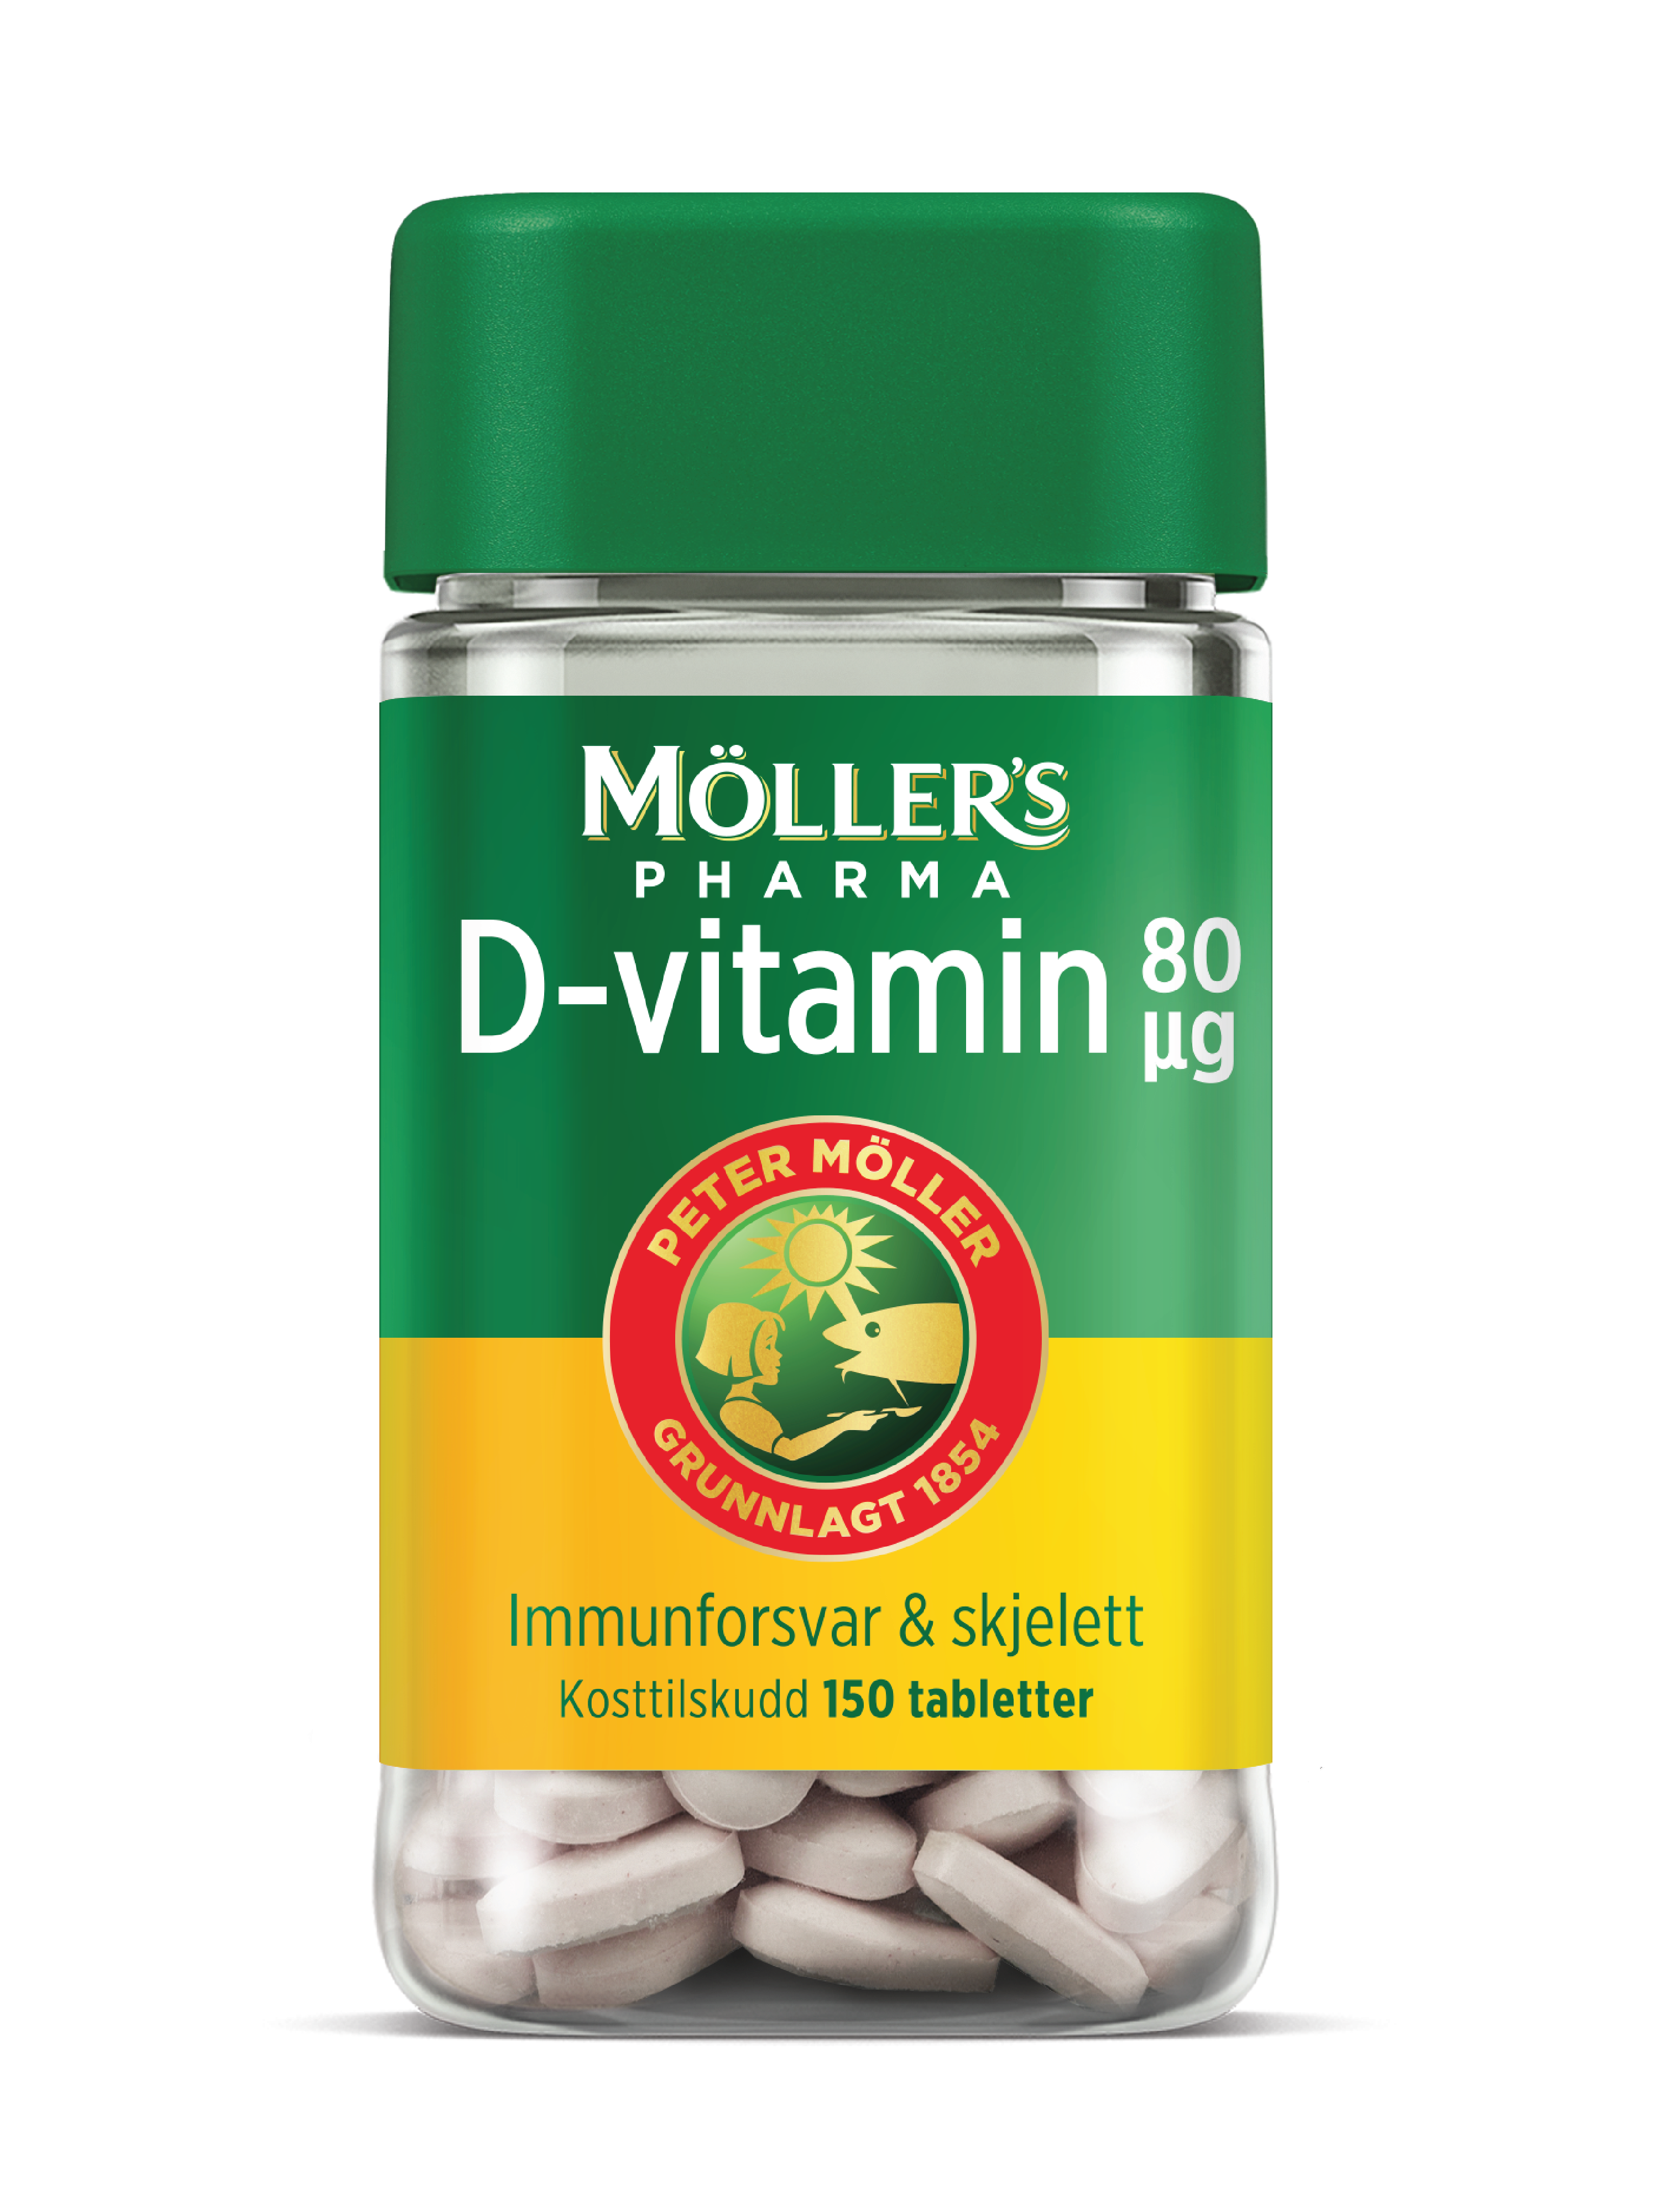 Möller's Pharma 80 µg D-vitamin tabletter, 150 stk.